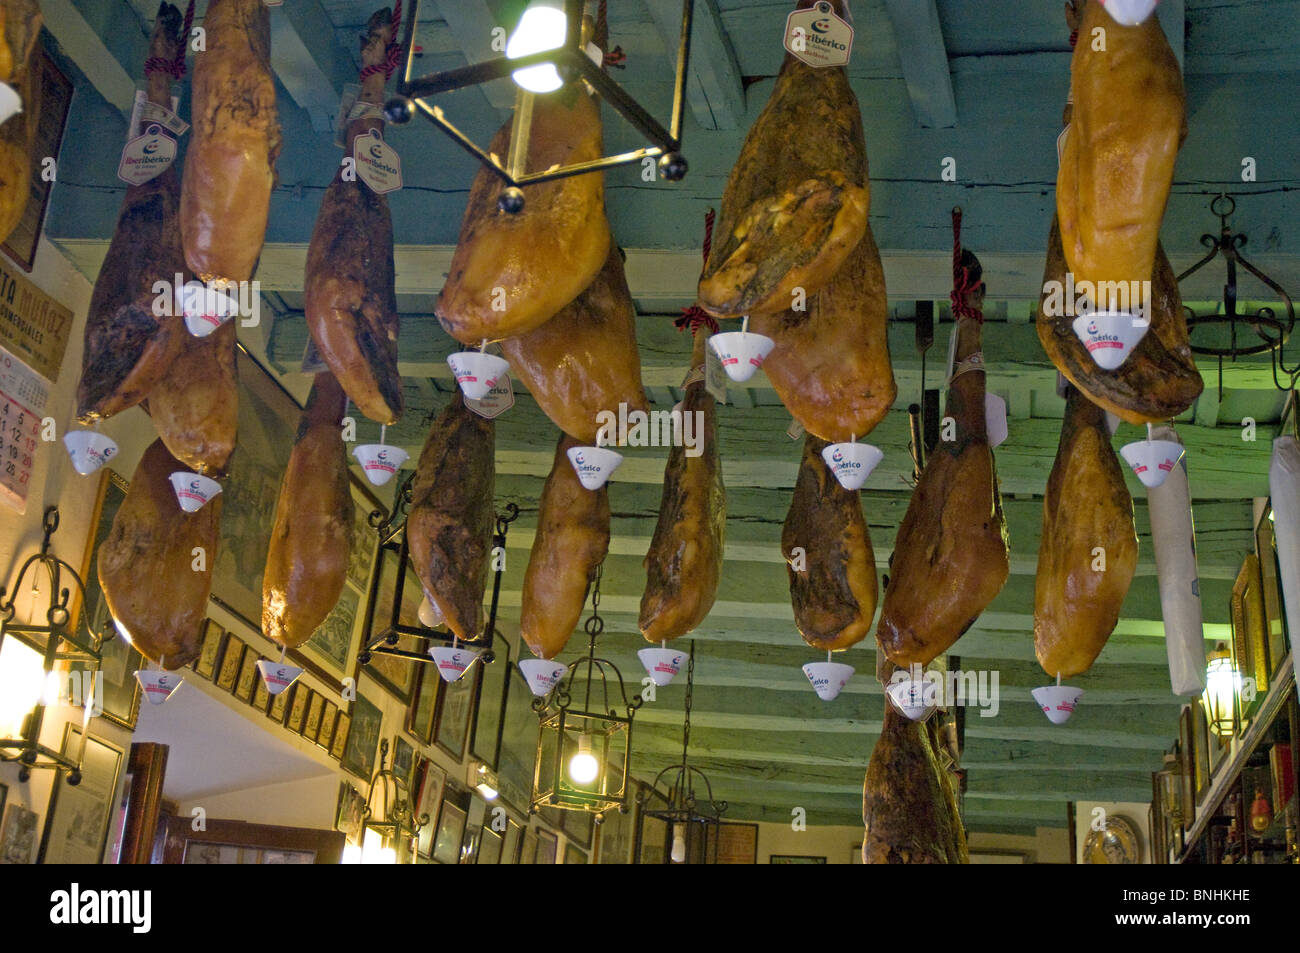 Spanisch trocknen Schinken hängen in einem Geschäft in Sevilla, Andalusien,  Spanien Stockfotografie - Alamy